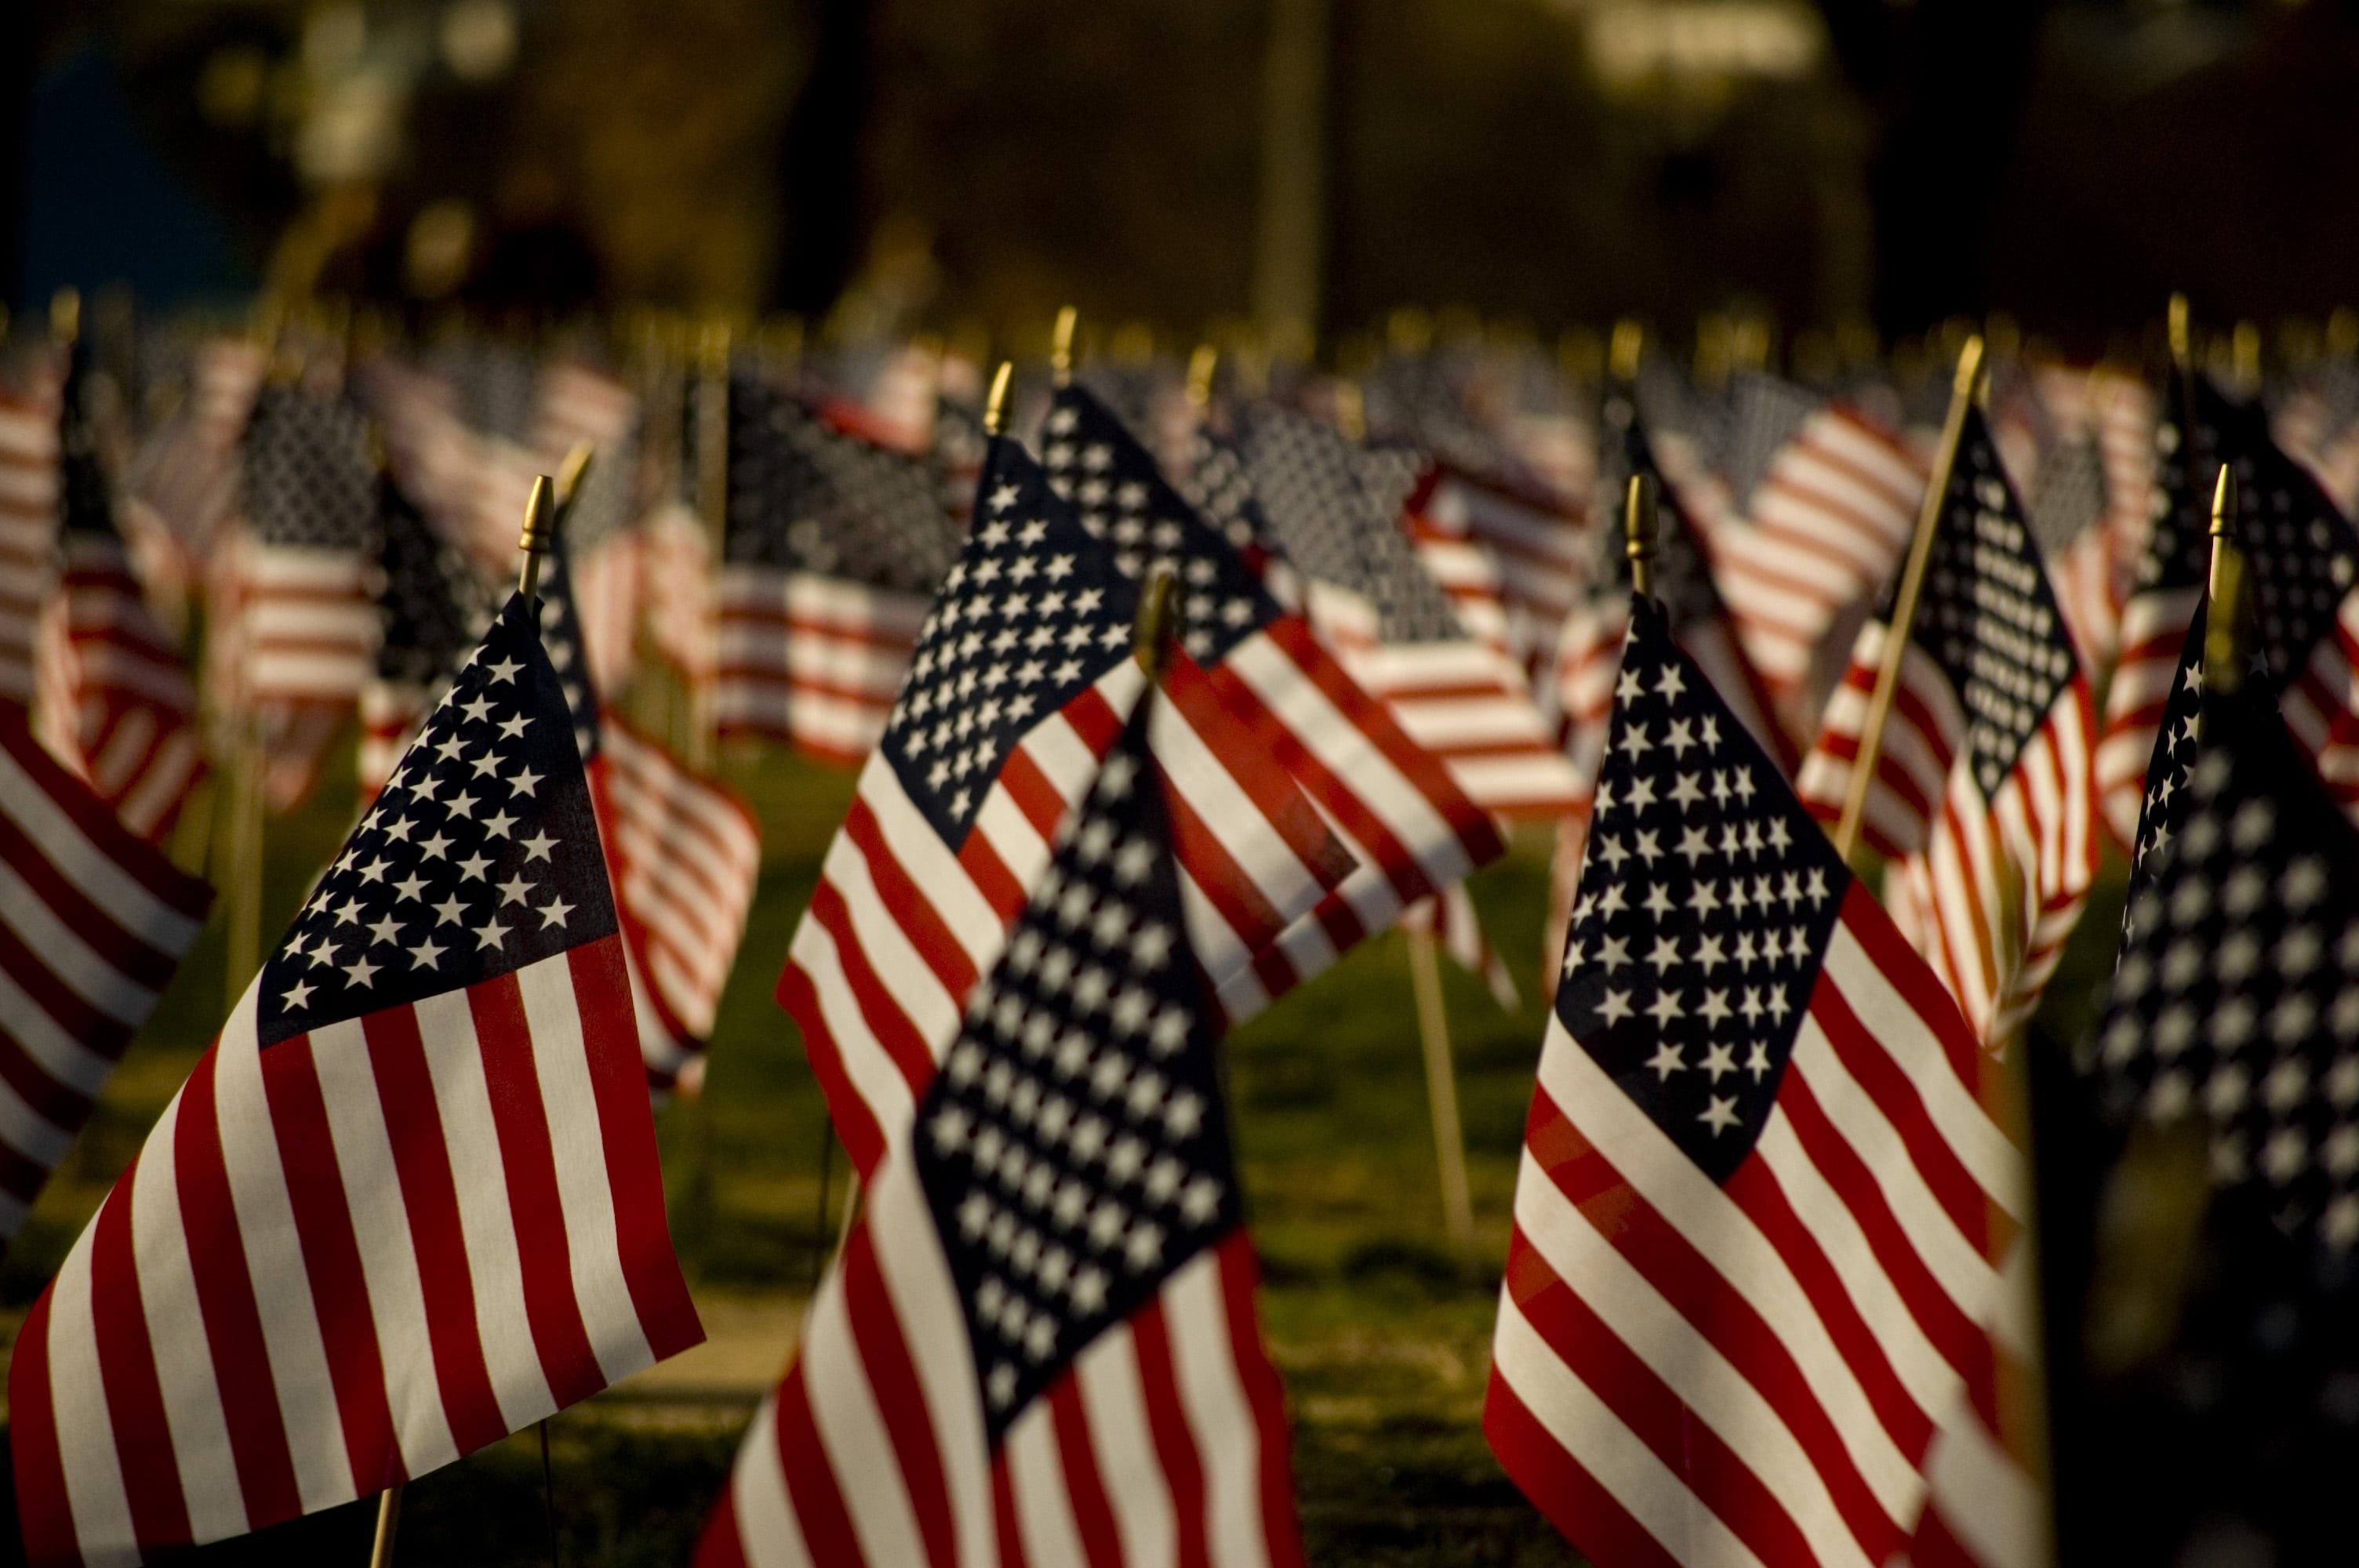 American Flag Memorial Day